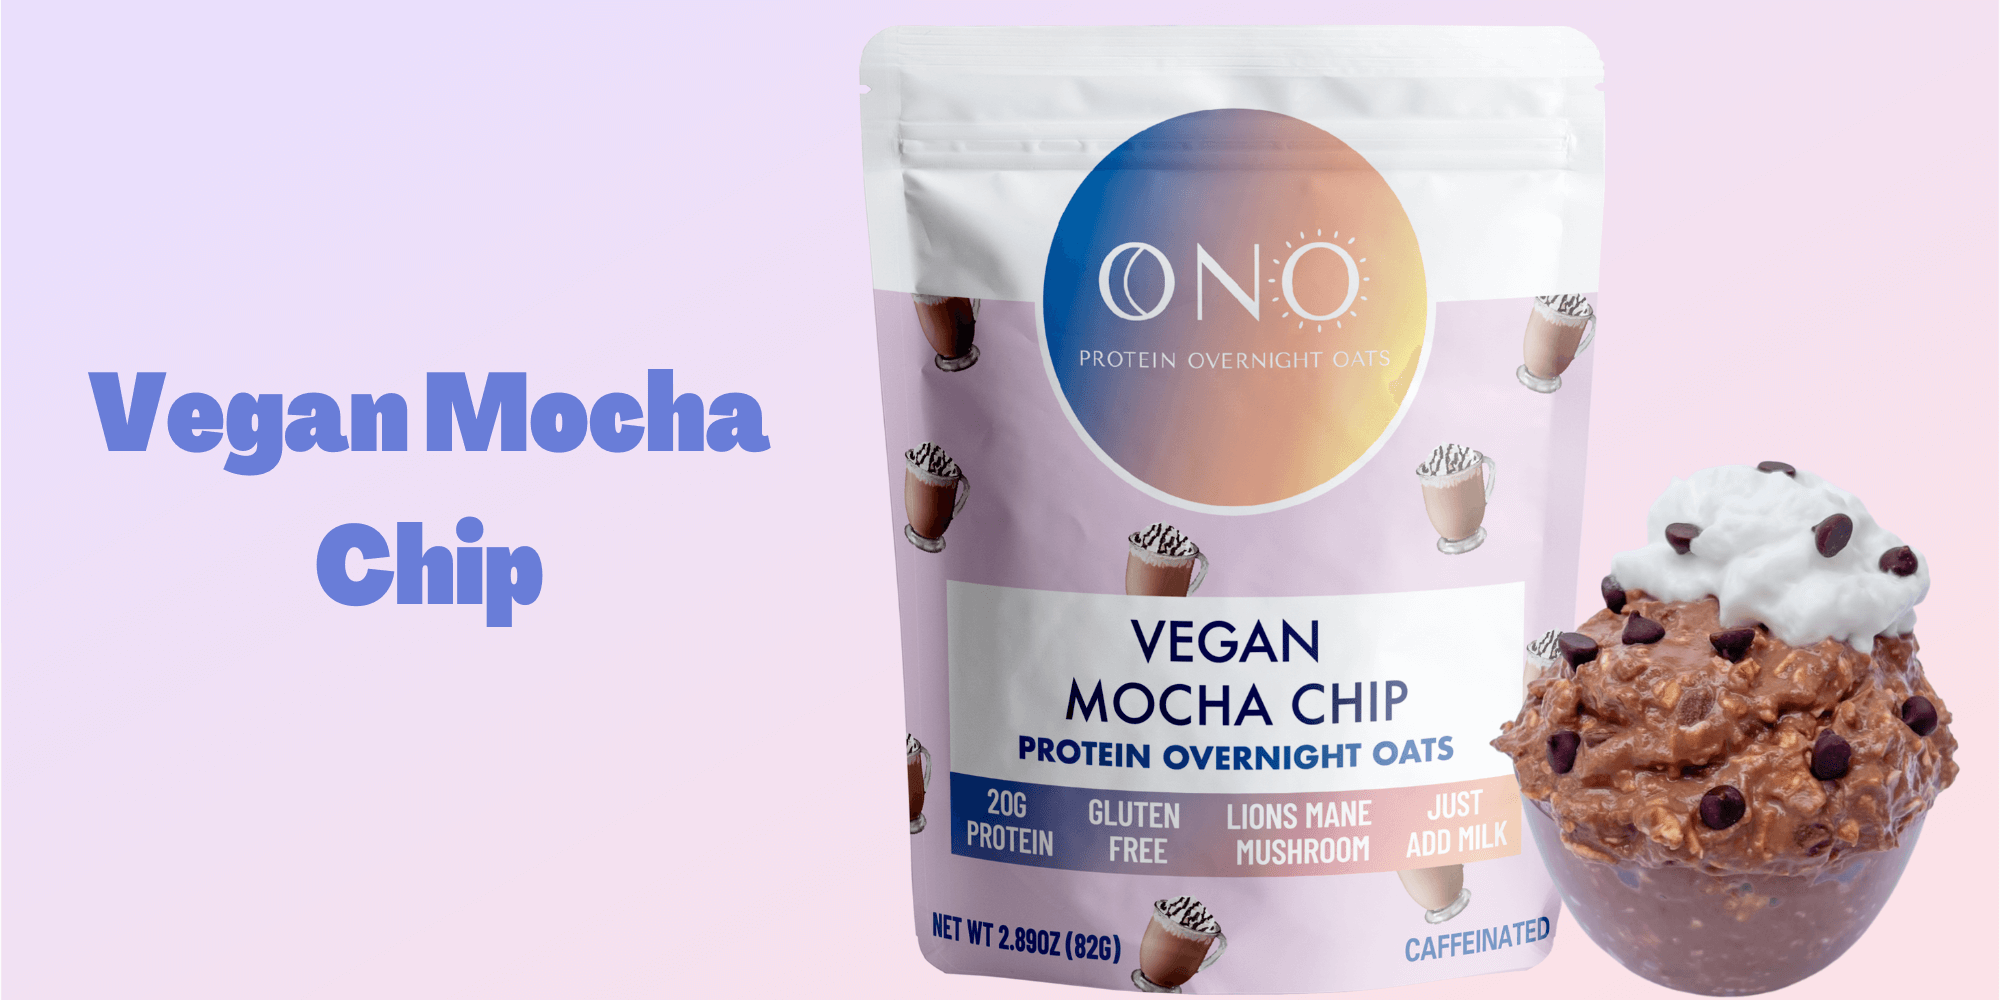 Vegan Mocha Chip